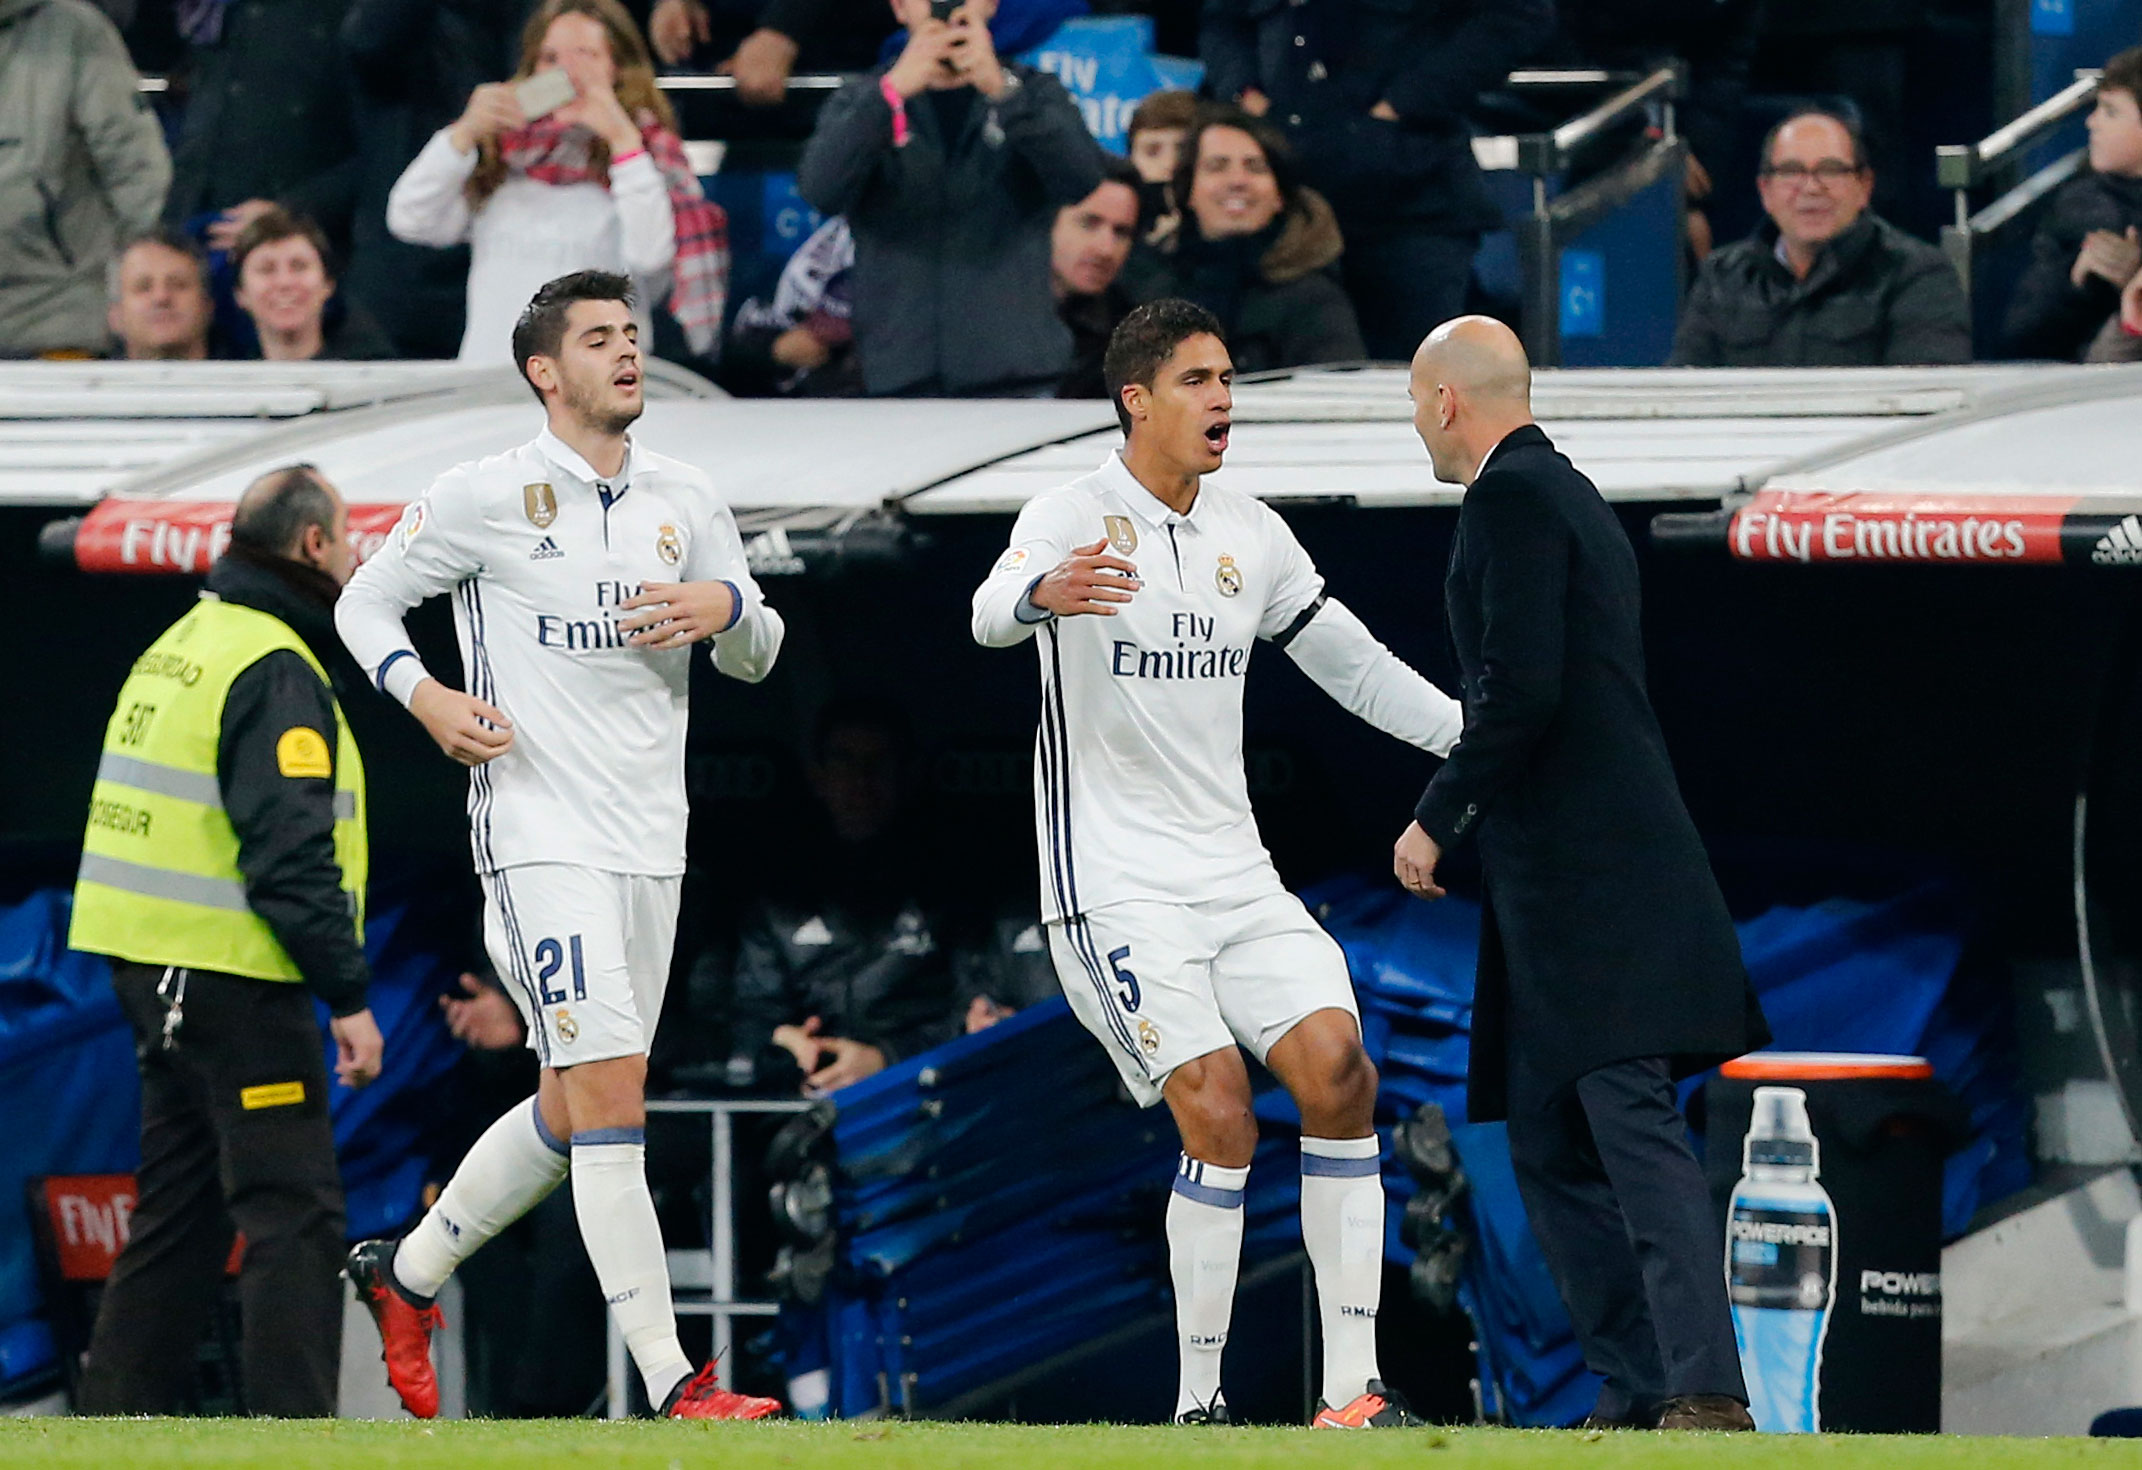 Raphaël Varane heeft zojuist de 2-0 gemaakt en viert zijn feestje met trainer Zinedine Zidane. De Franse trainer kreeg woensdag exact een jaar geleden de touwtjes in handen bij Real Madrid. Onder zijn leiding veroverde Real drie prijzen en werden slechts twee wedstrijden verloren. 